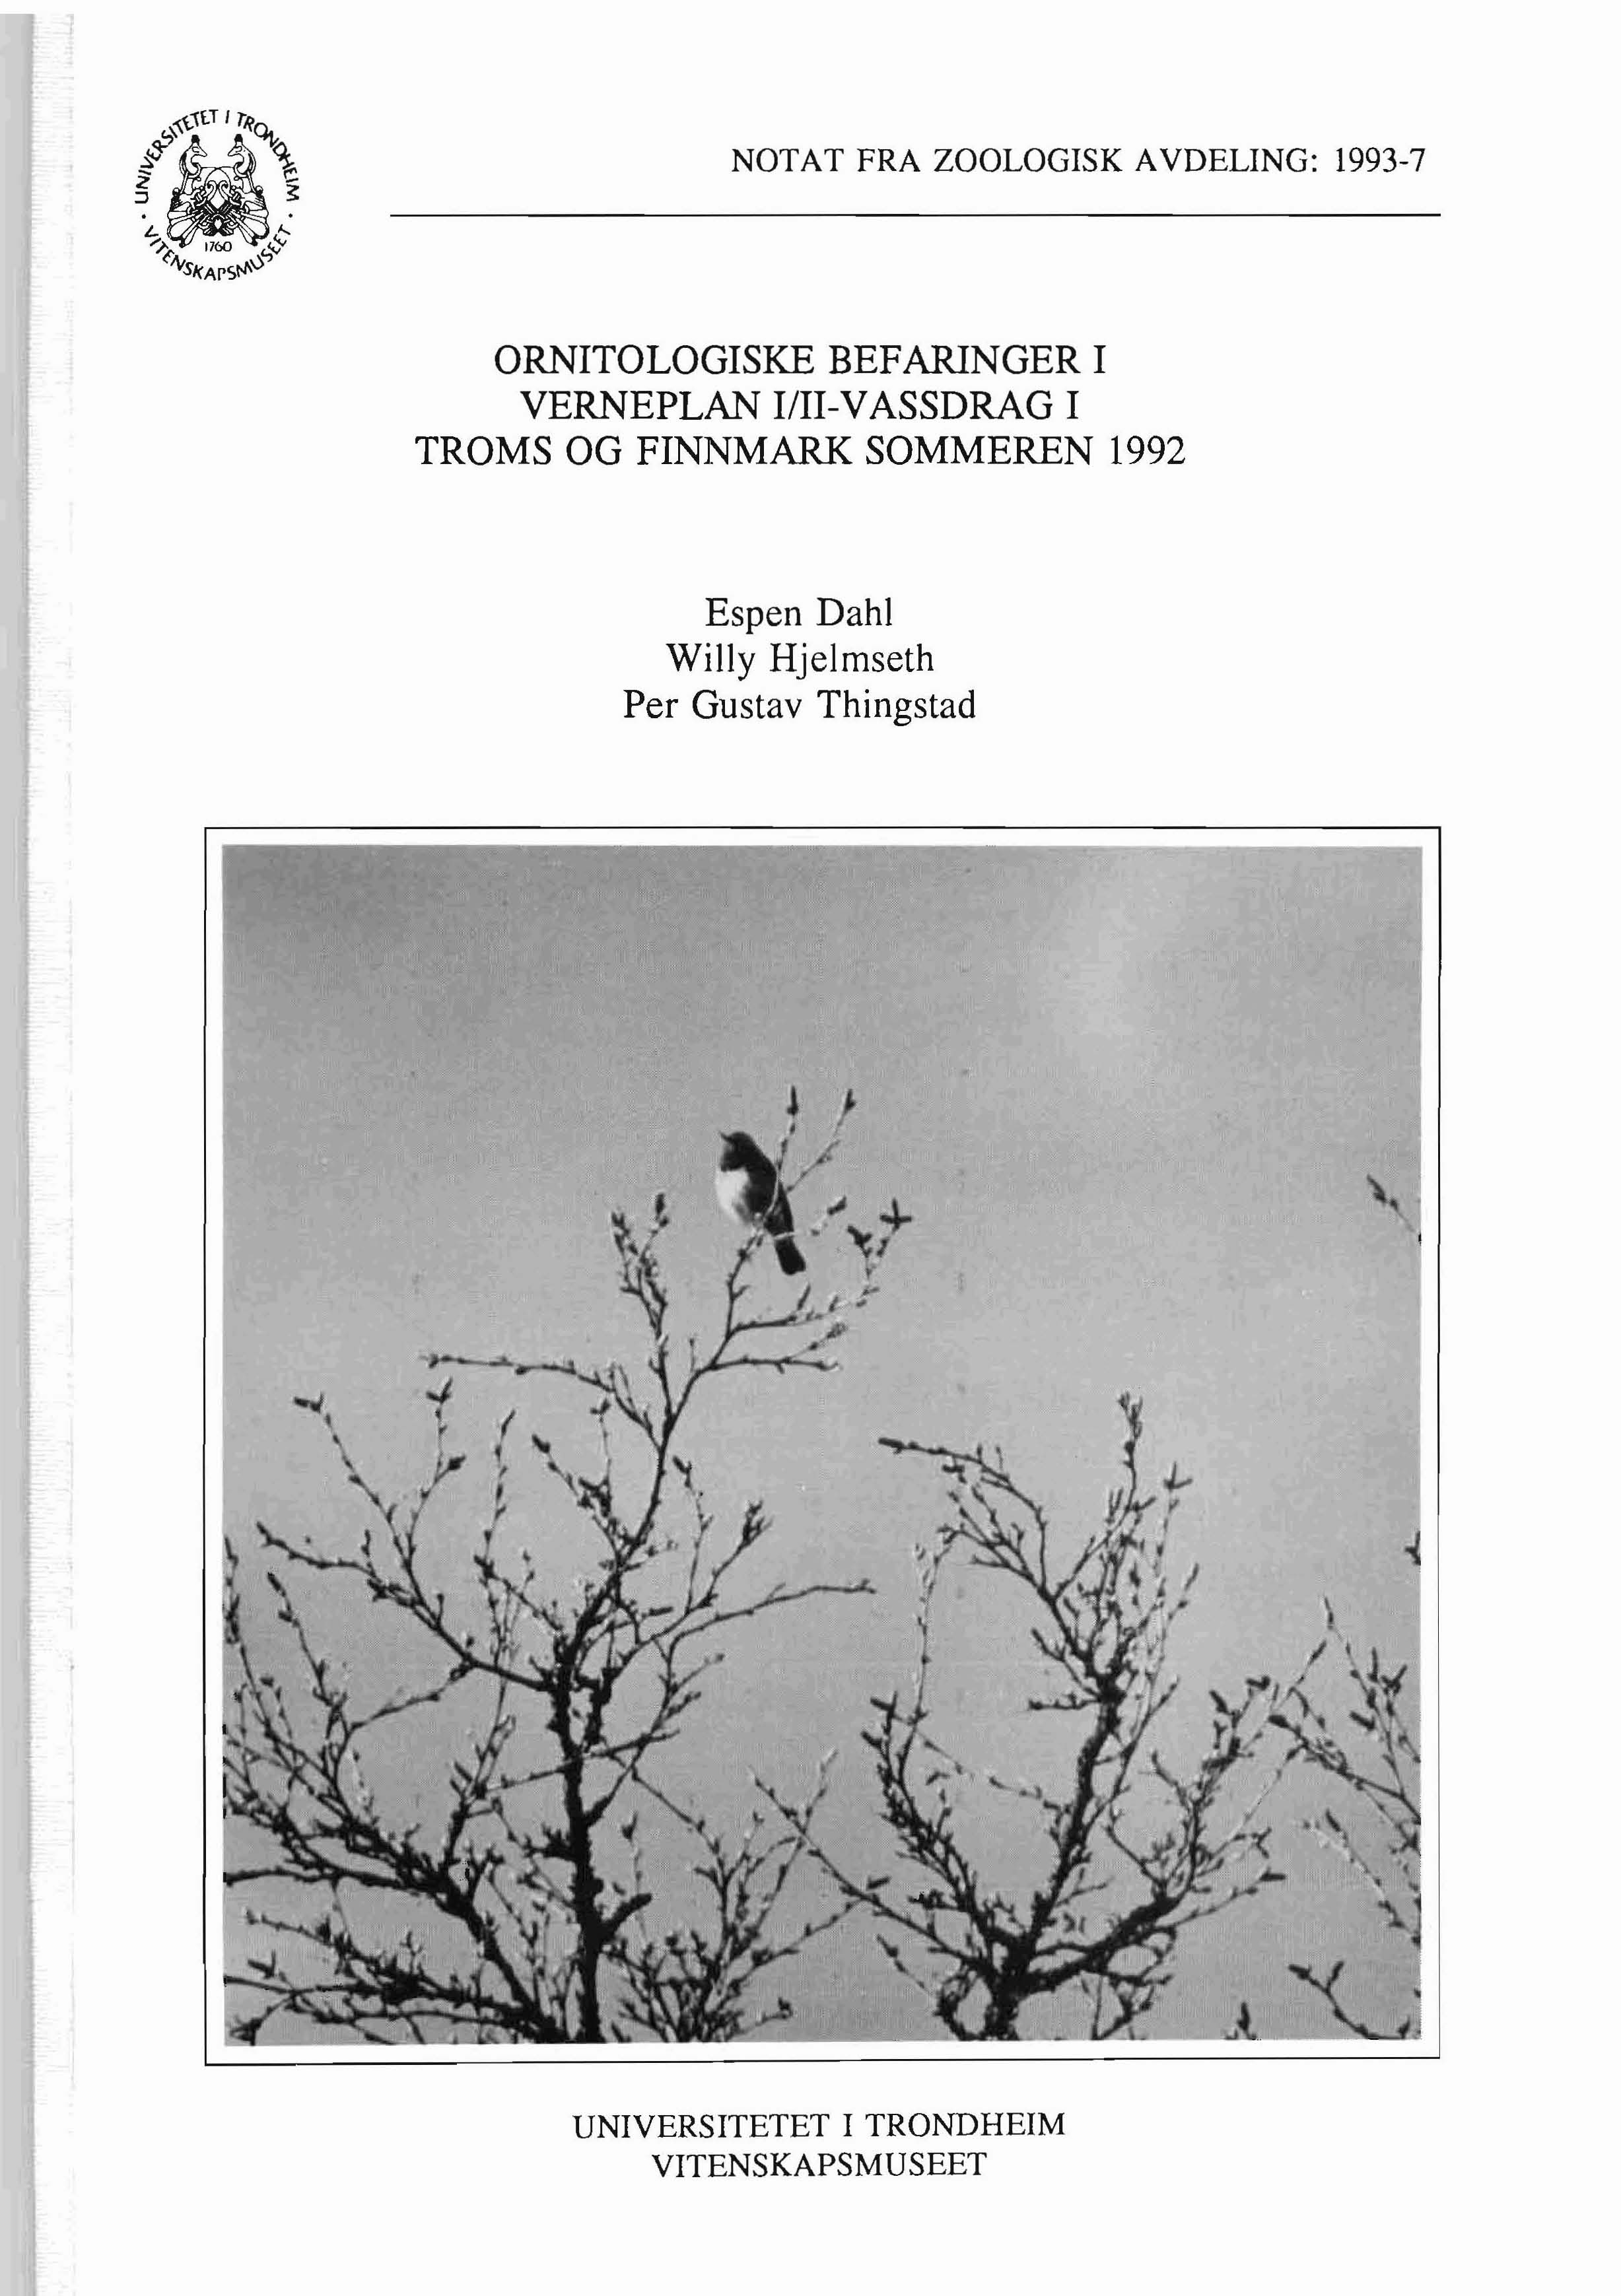 NOTAT FRA ZOOLOGISK AVDELING: 1993-7 ORNITOLOGISKE BEFARINGER I VERNEPLAN lill-vassdrag I TROMS OG